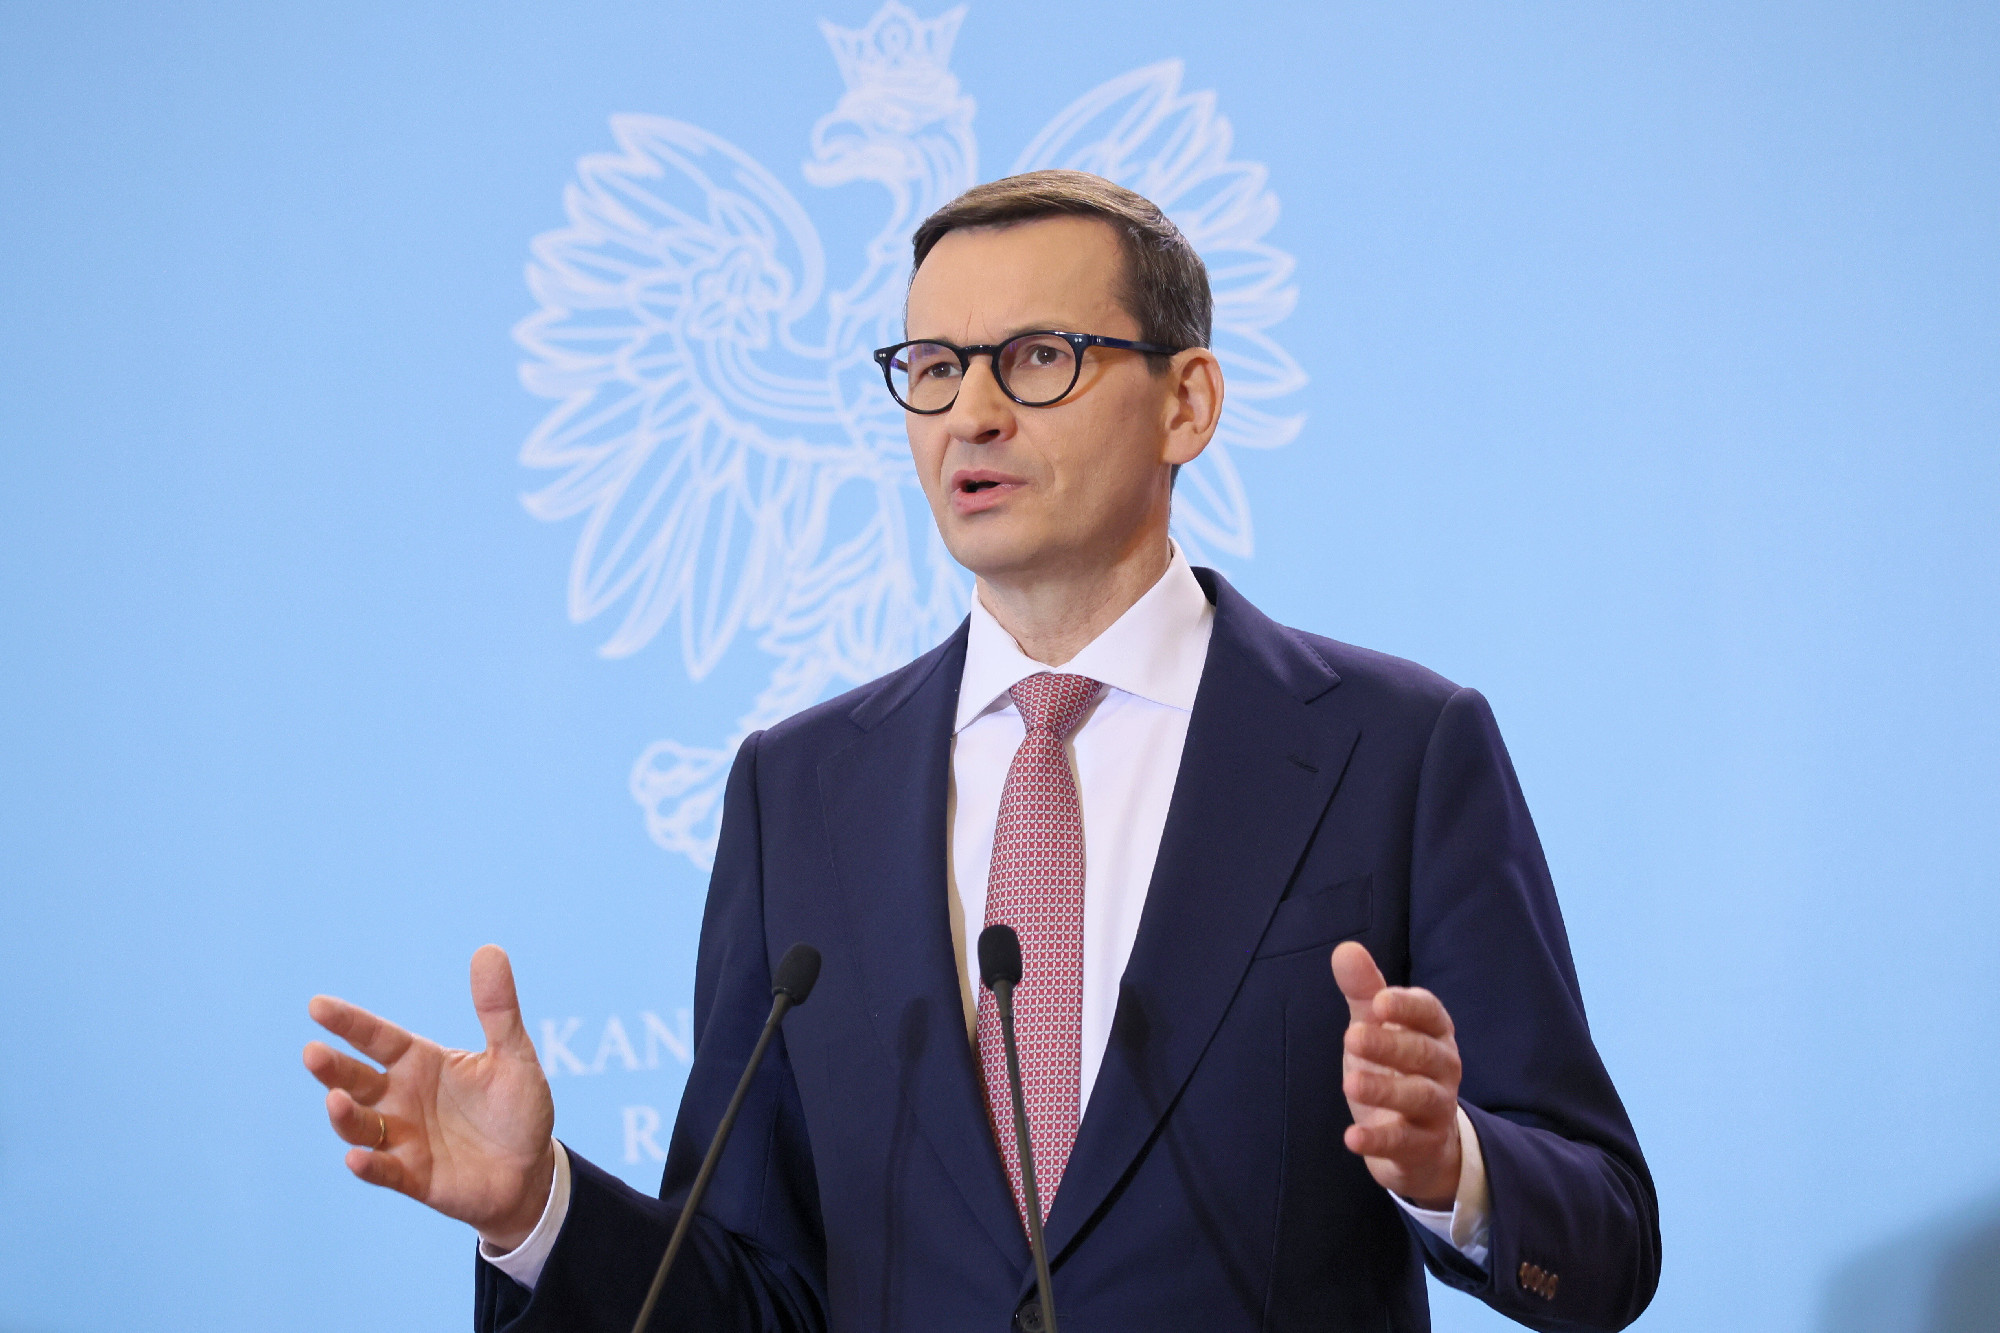 A lengyel államfő első körben a jelenlegi miniszterelnököt kéri fel kormányalakításra